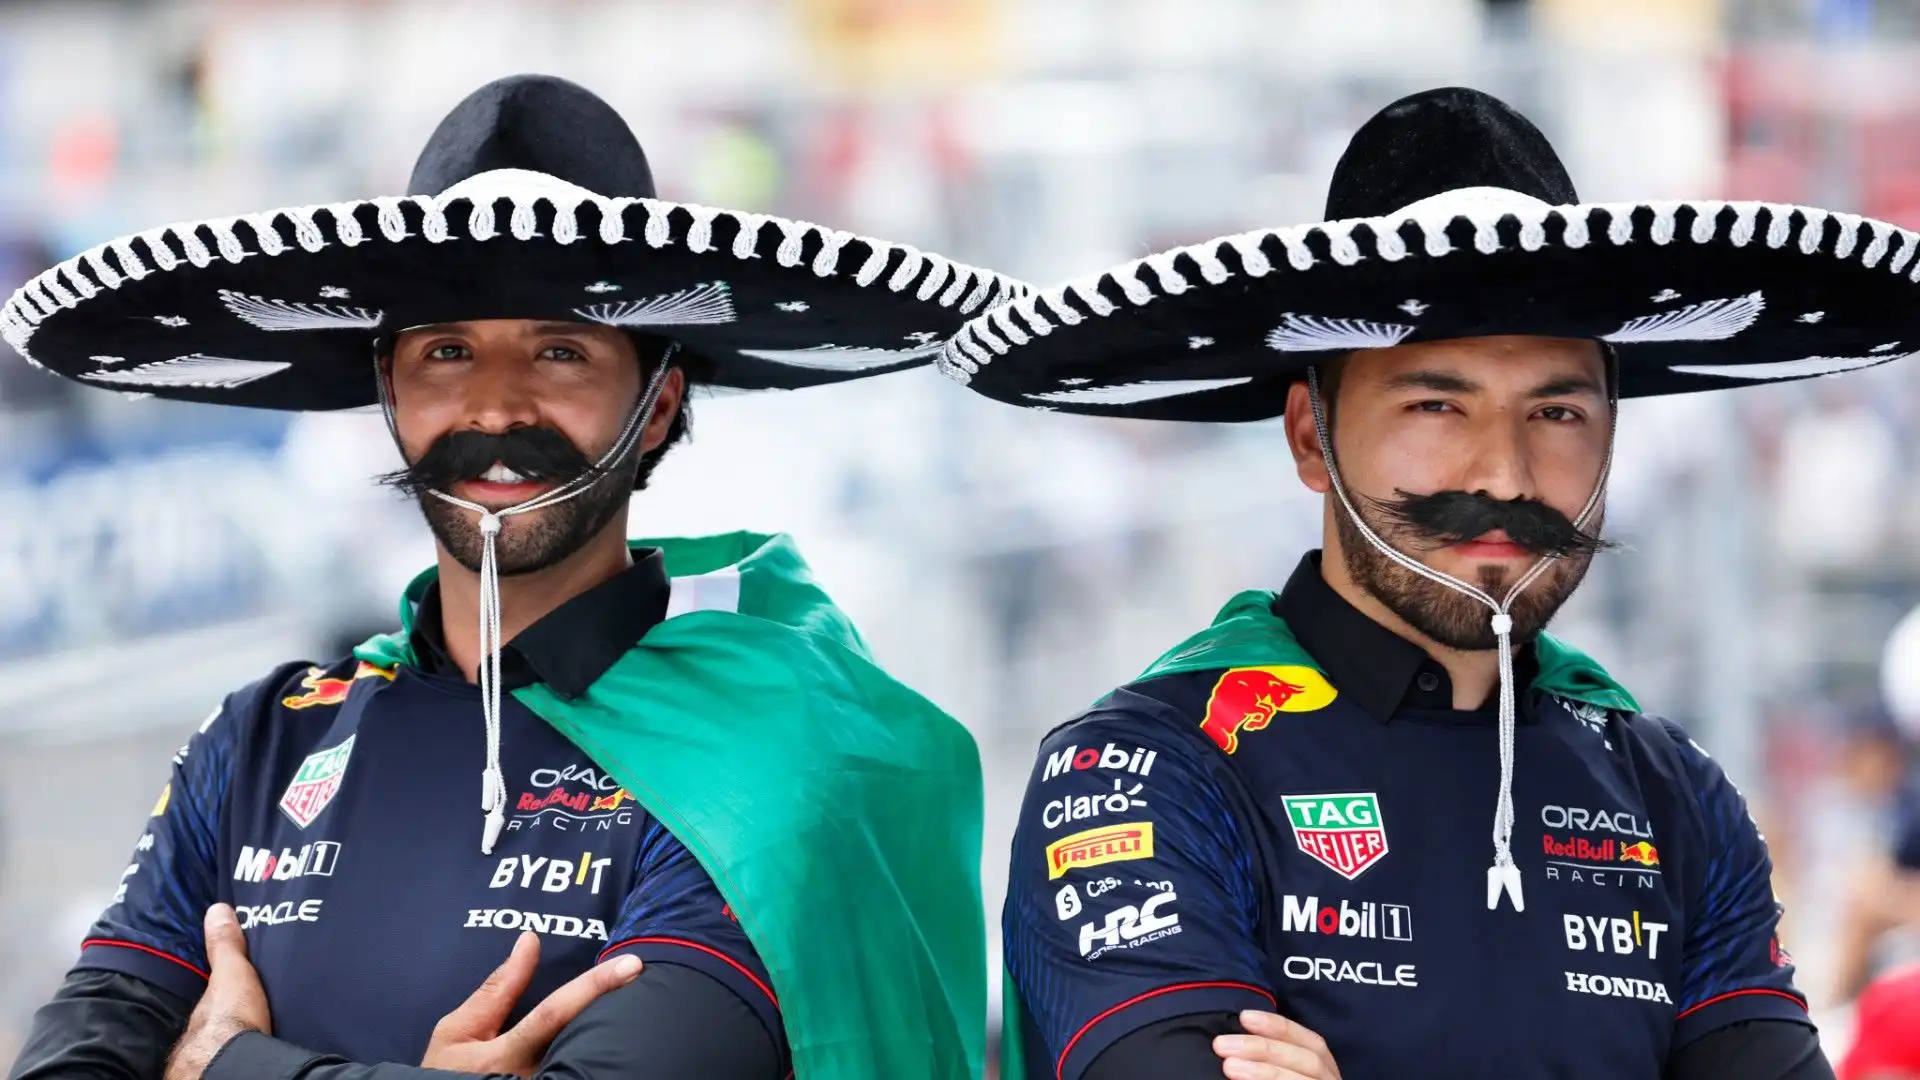 Questi due ragazzi hanno indossato dei baffi finti e un sombrero come testimonianza della loro simpatia verso Sergio Perez